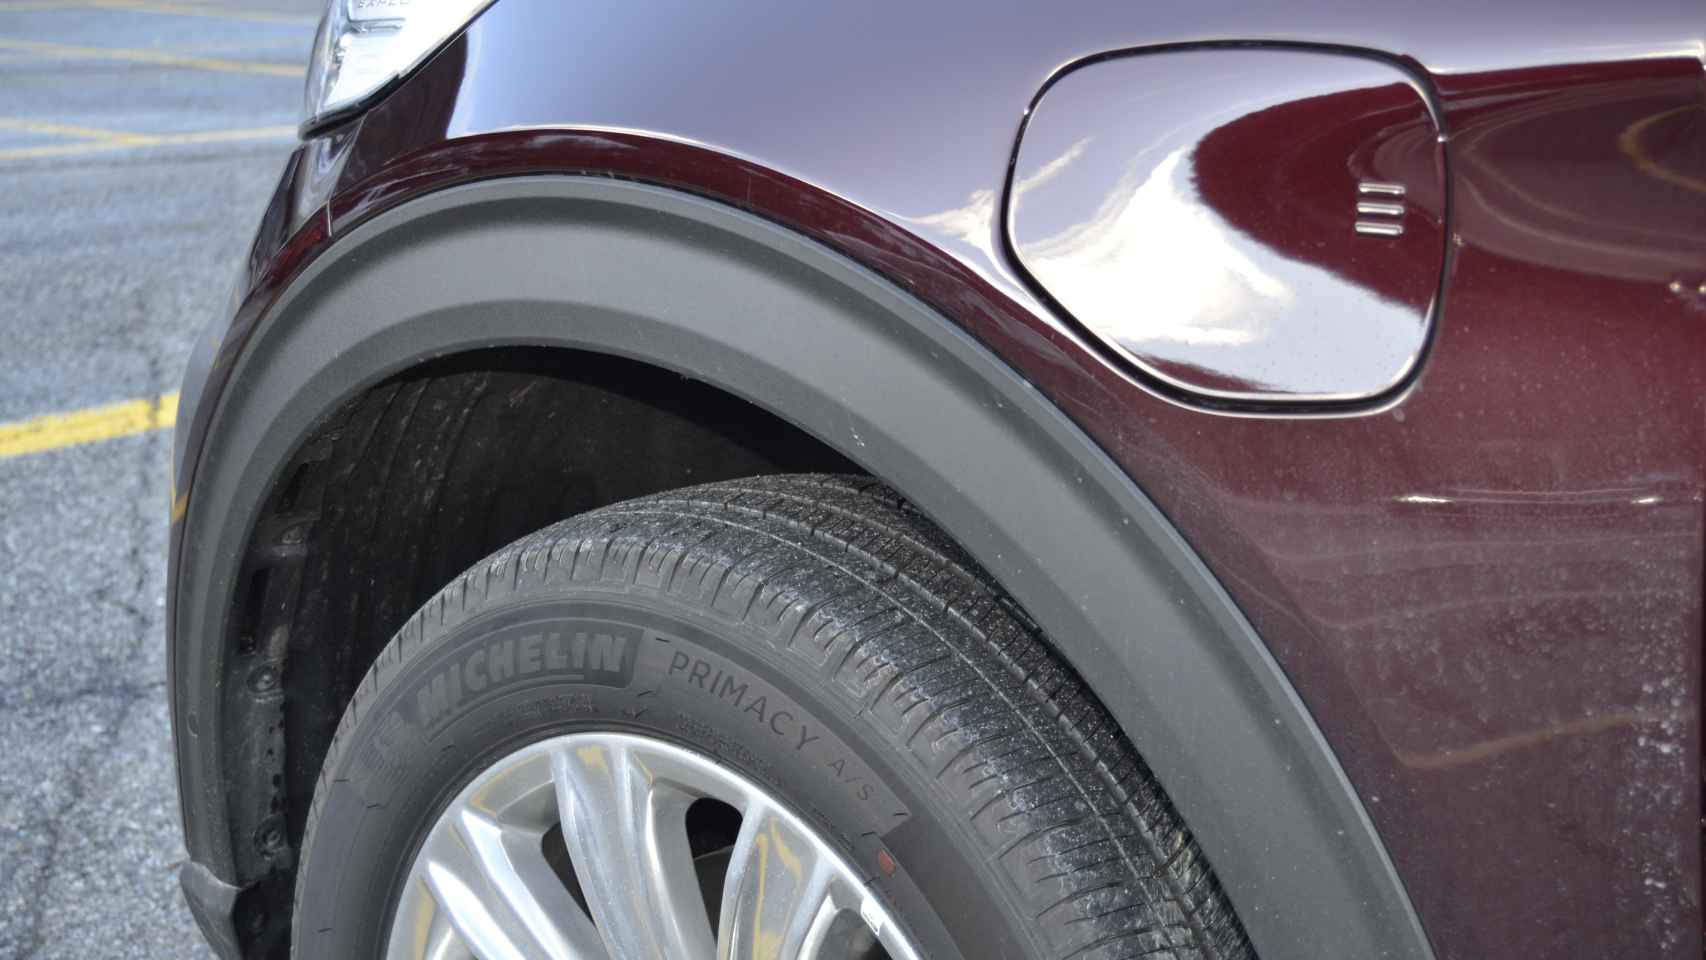 El Ford Explorer trae de serie los neumáticos Michelin Primacy A/S (All Season).